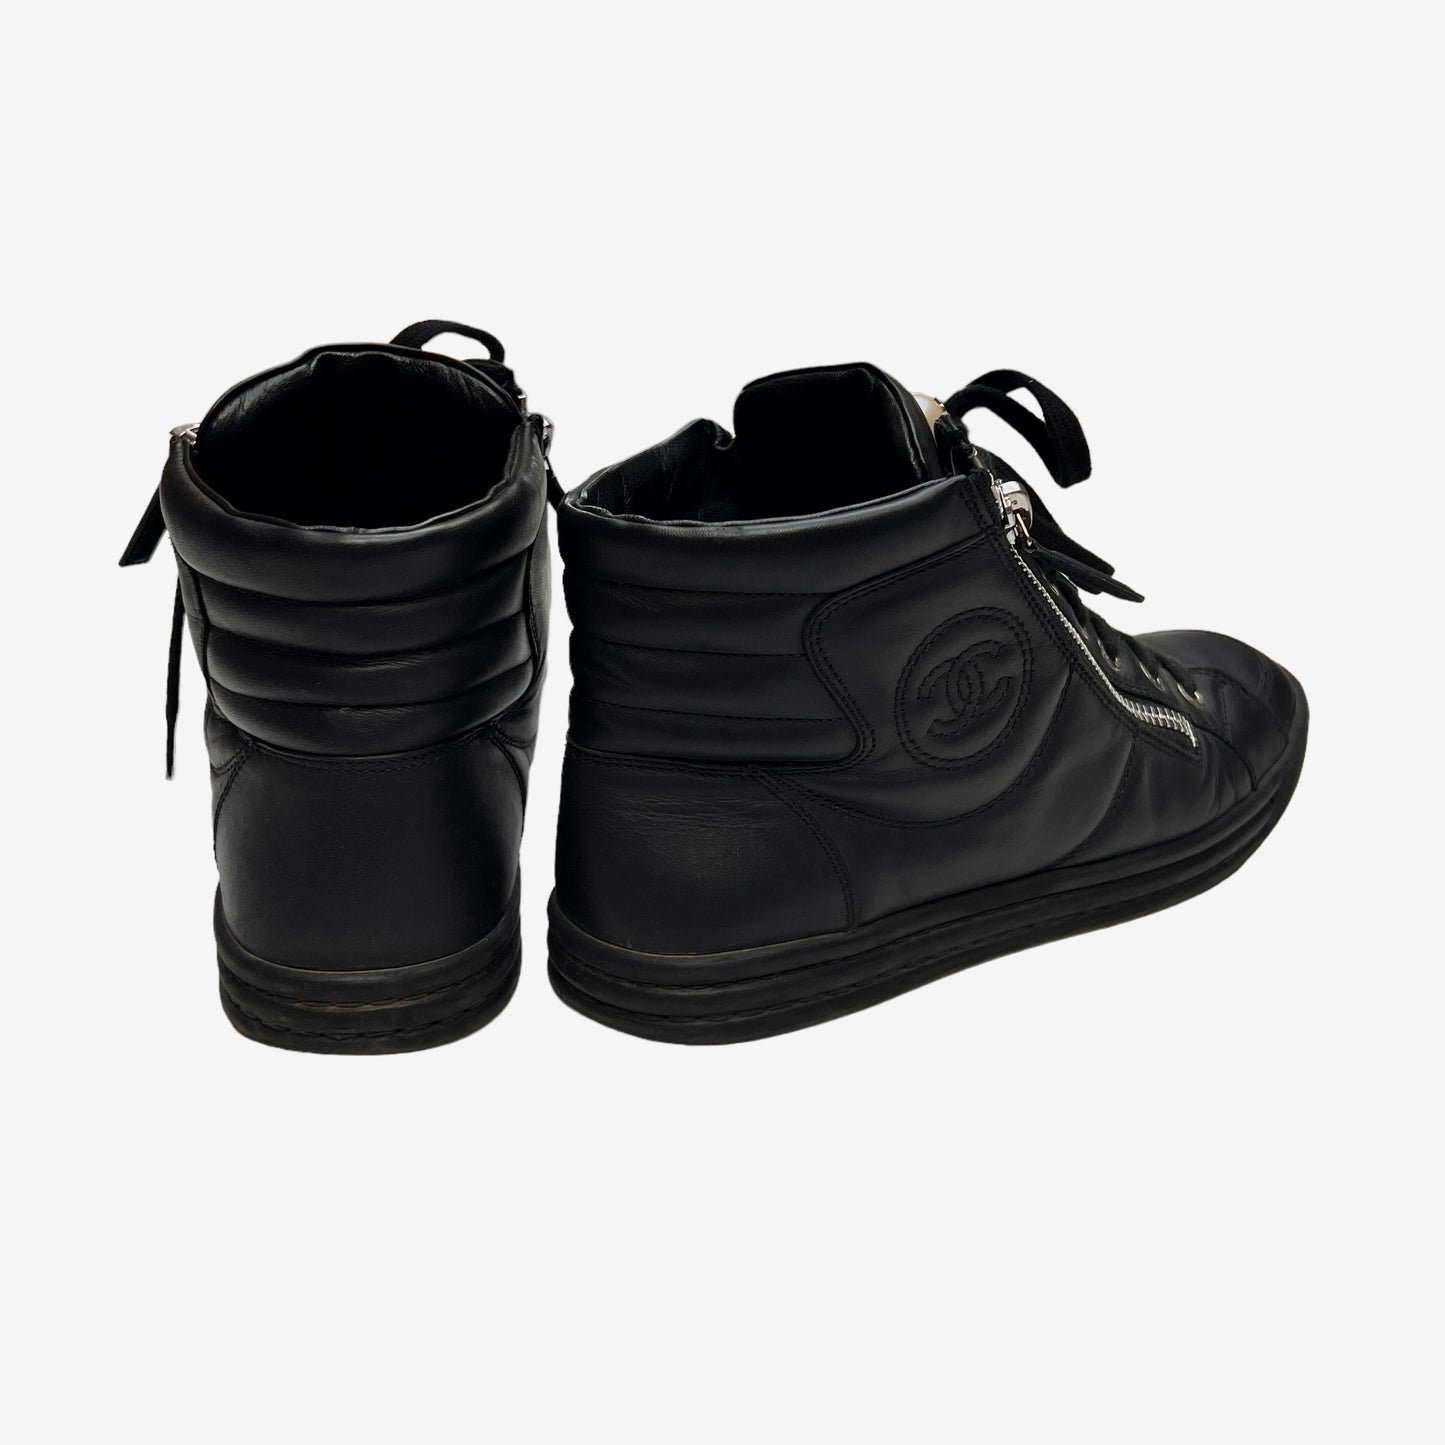 Black High Top Sneakers - 7